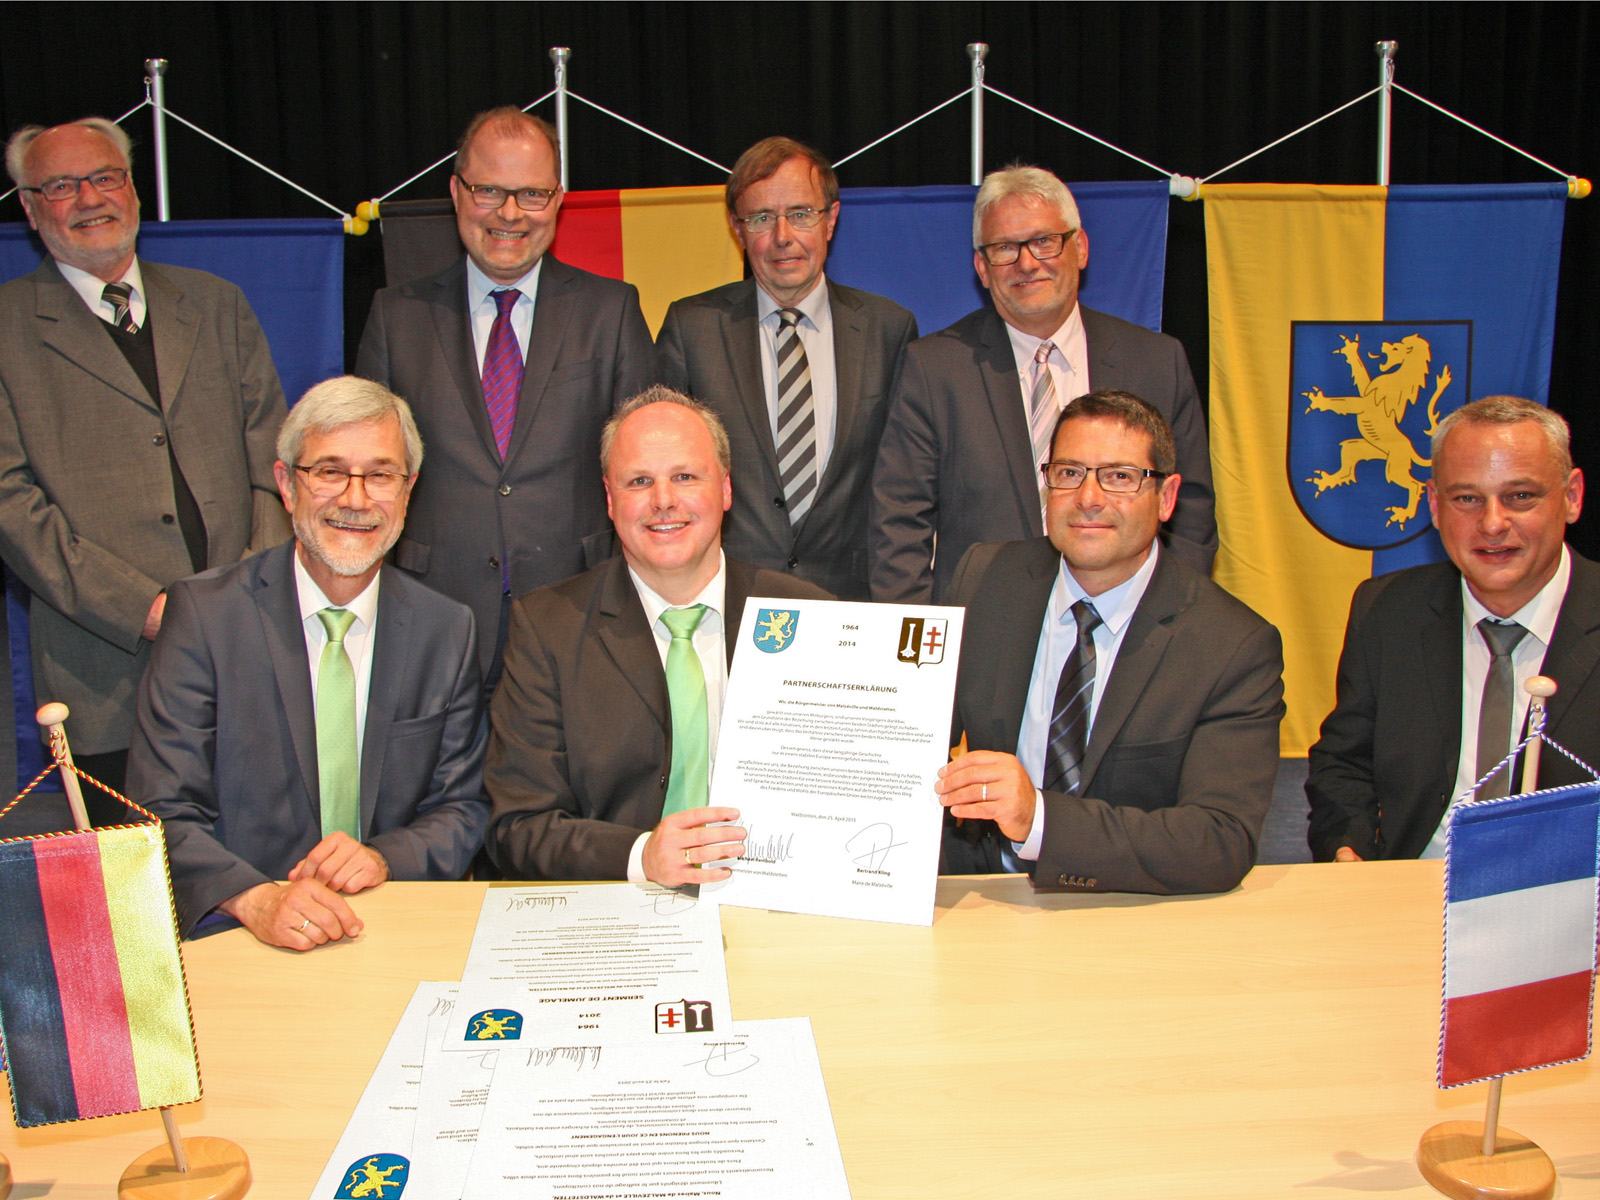  Unterzeichnung der neuen Urkunde beim 50-jährigen Partnerschafts-Jubiläum zwischen Malzéville und Waldstetten. 